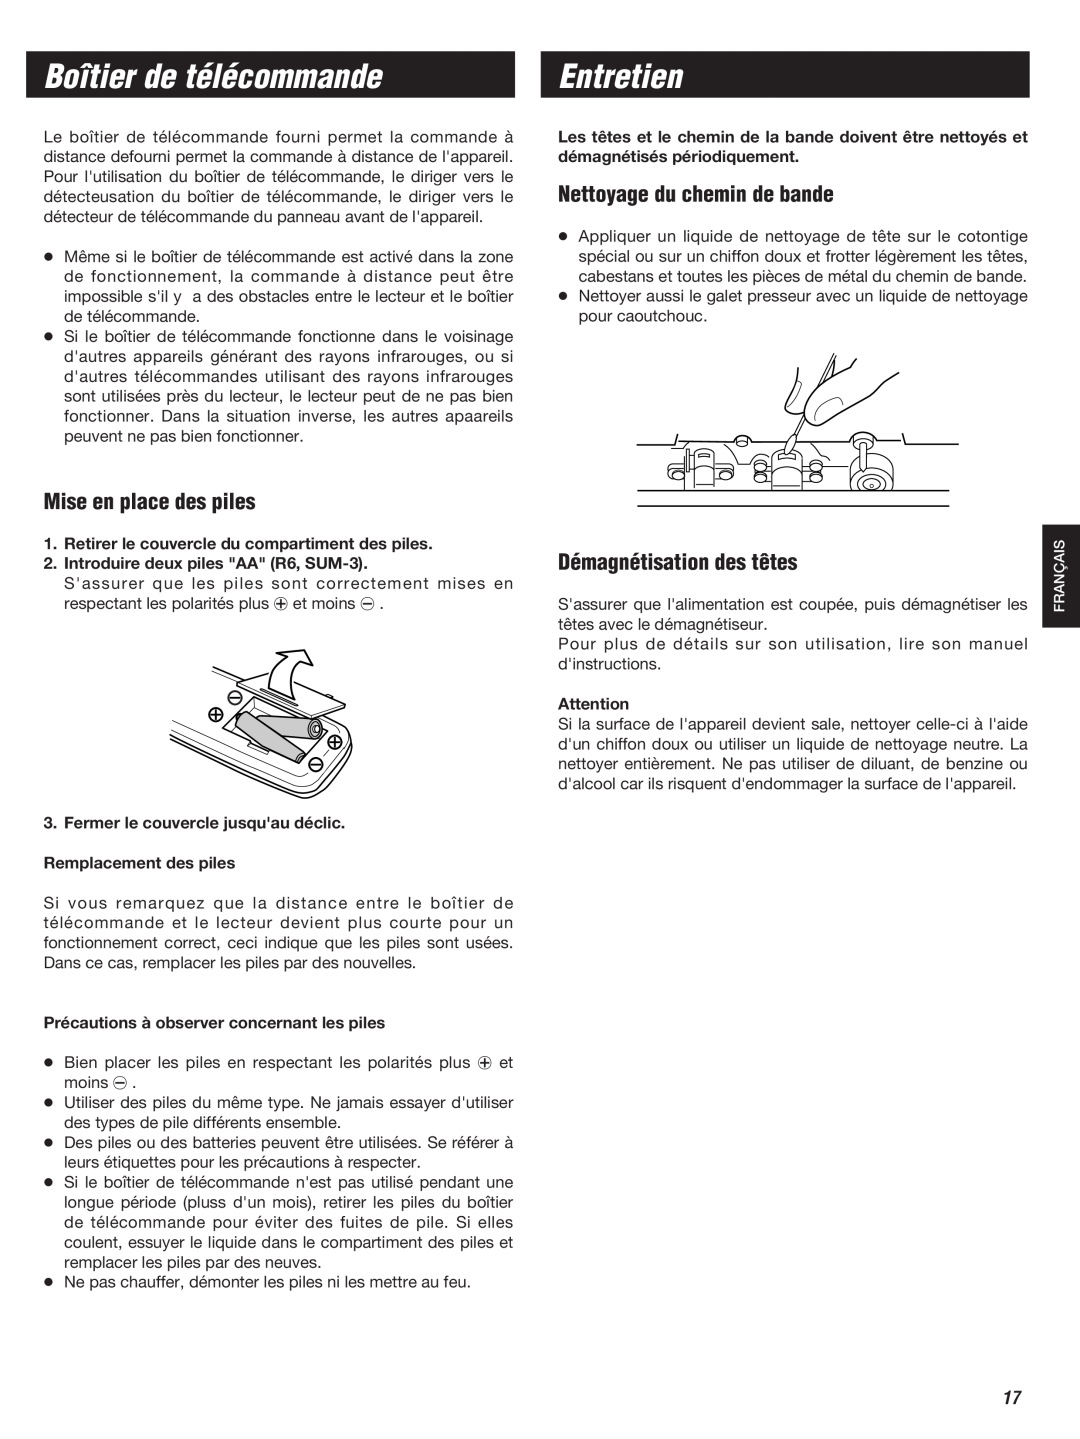 Teac W-860R owner manual Boîtier de télécommande, Entretien, Mise en place des piles, Nettoyage du chemin de bande 